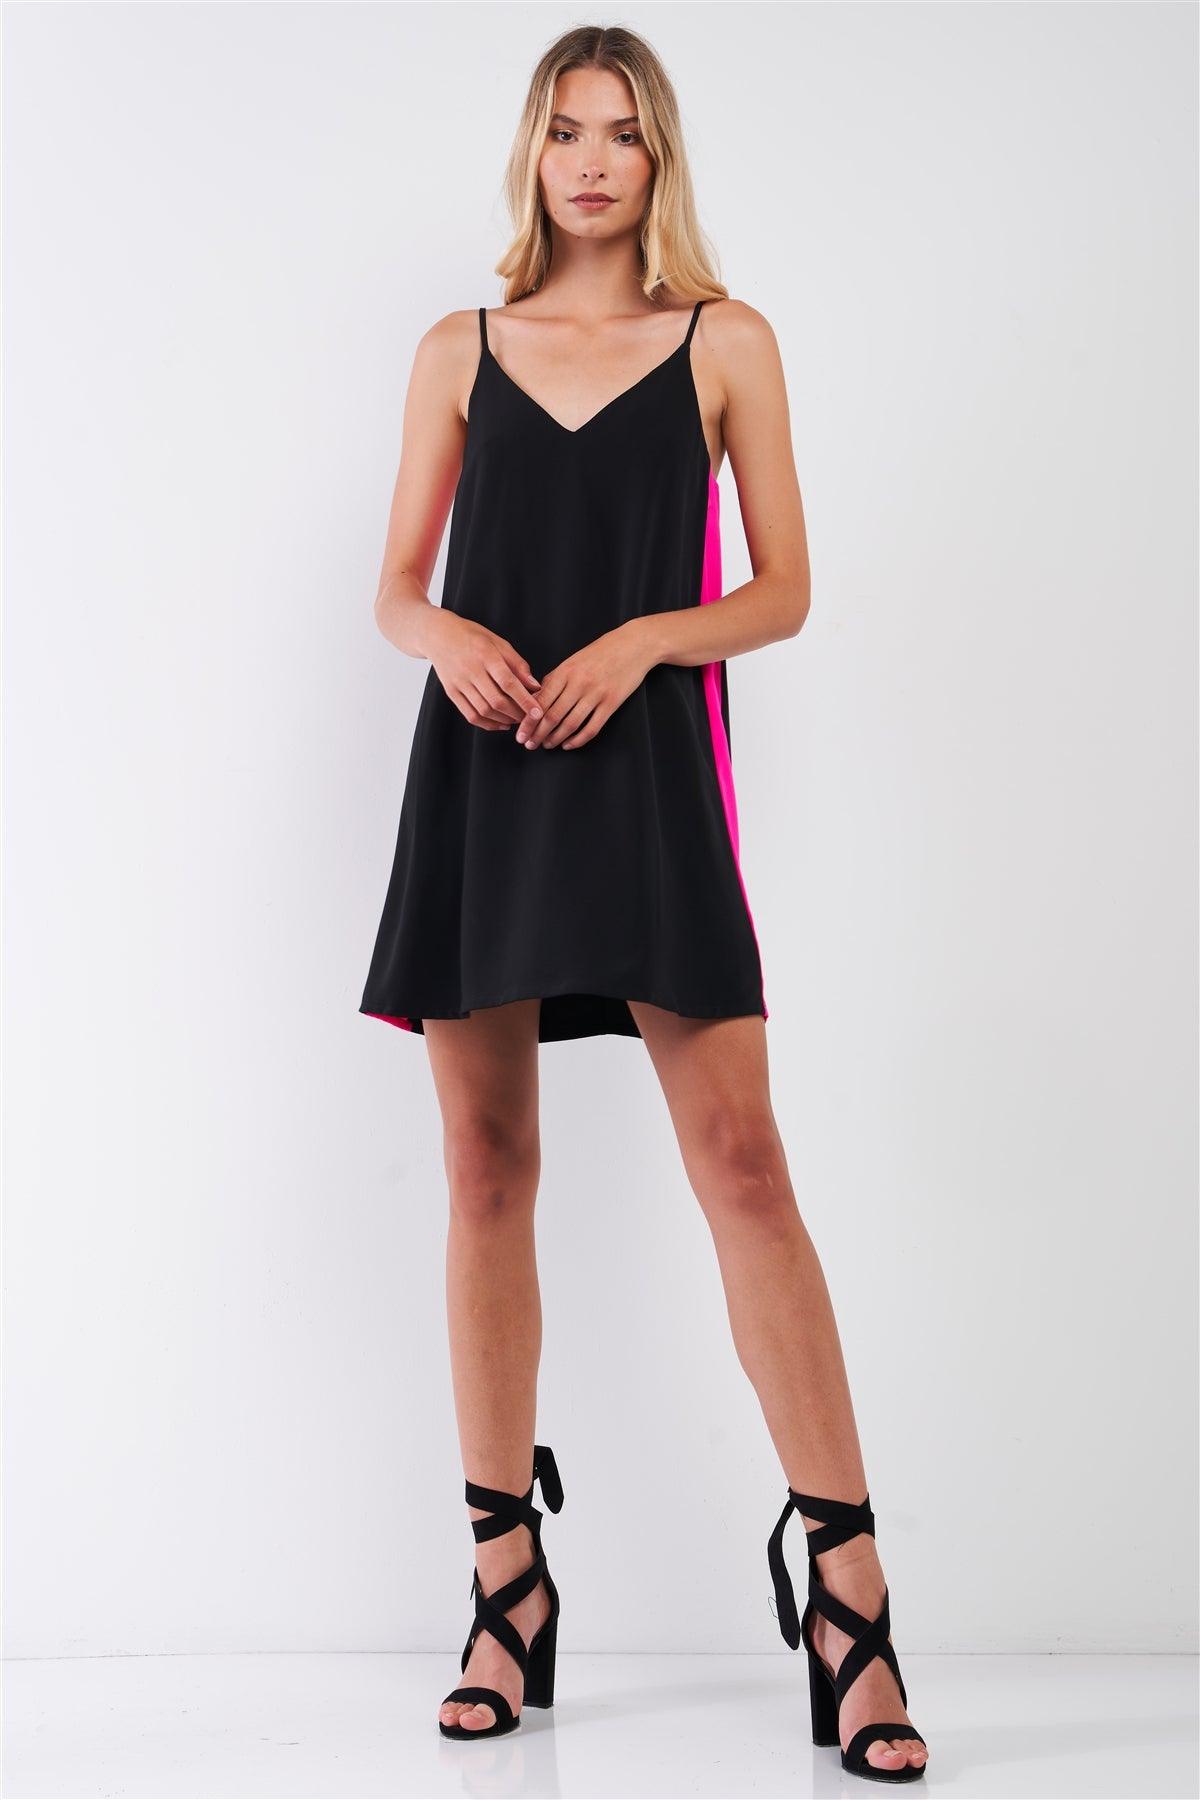 Black & Pink Sleeveless V-Neck Side Stripe Detail Relaxed Mini Dress /1-2-2